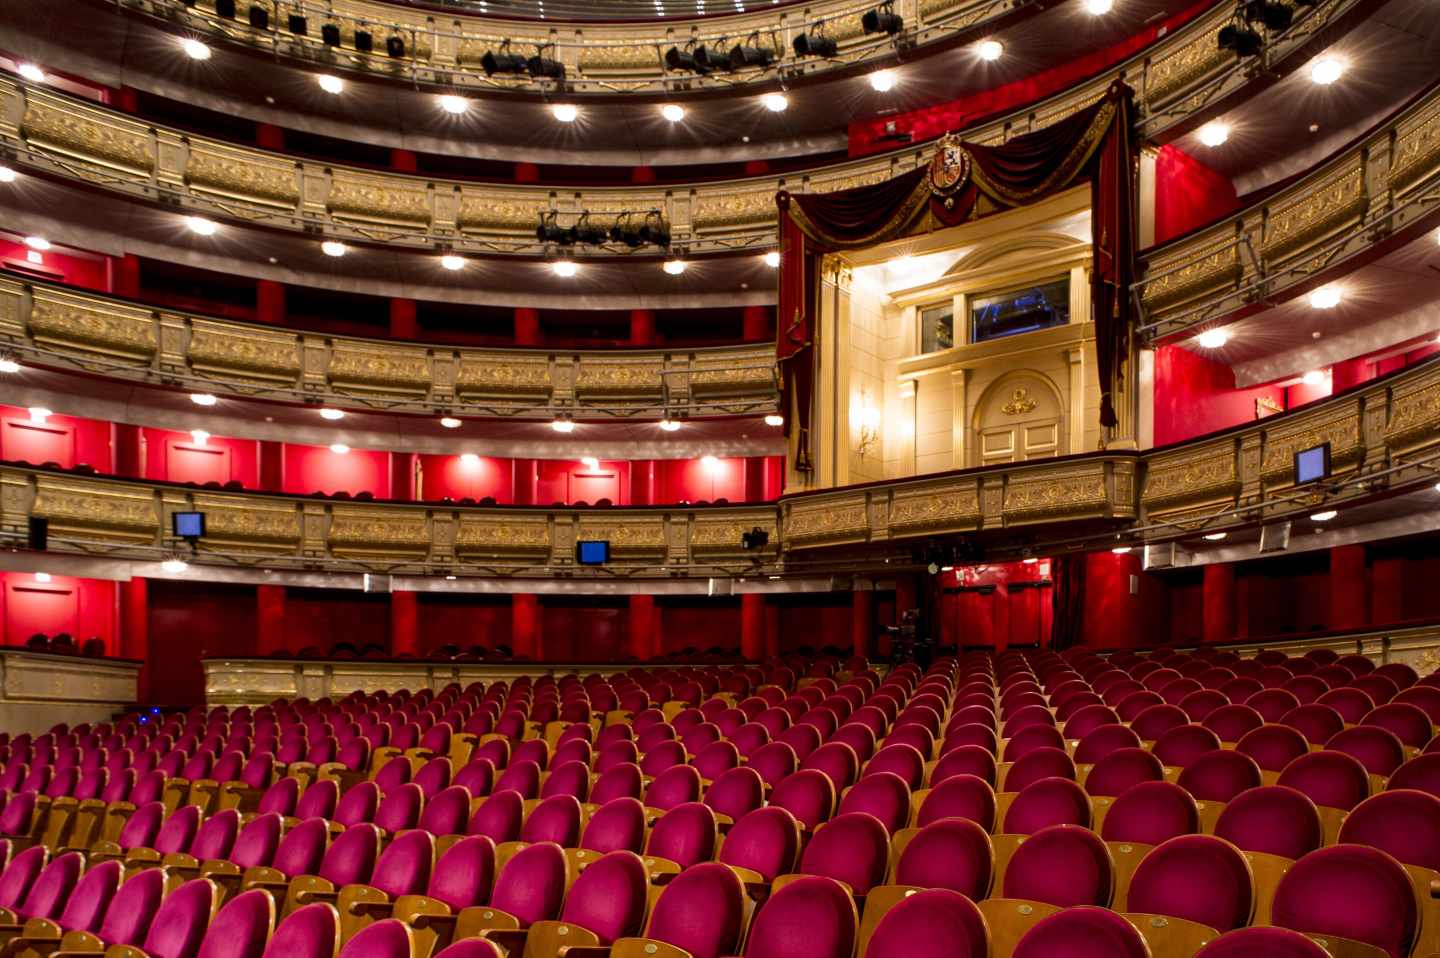 El pianista Iñaki Salvador sufre una indisposición grave en plena actuación en el Teatro Real